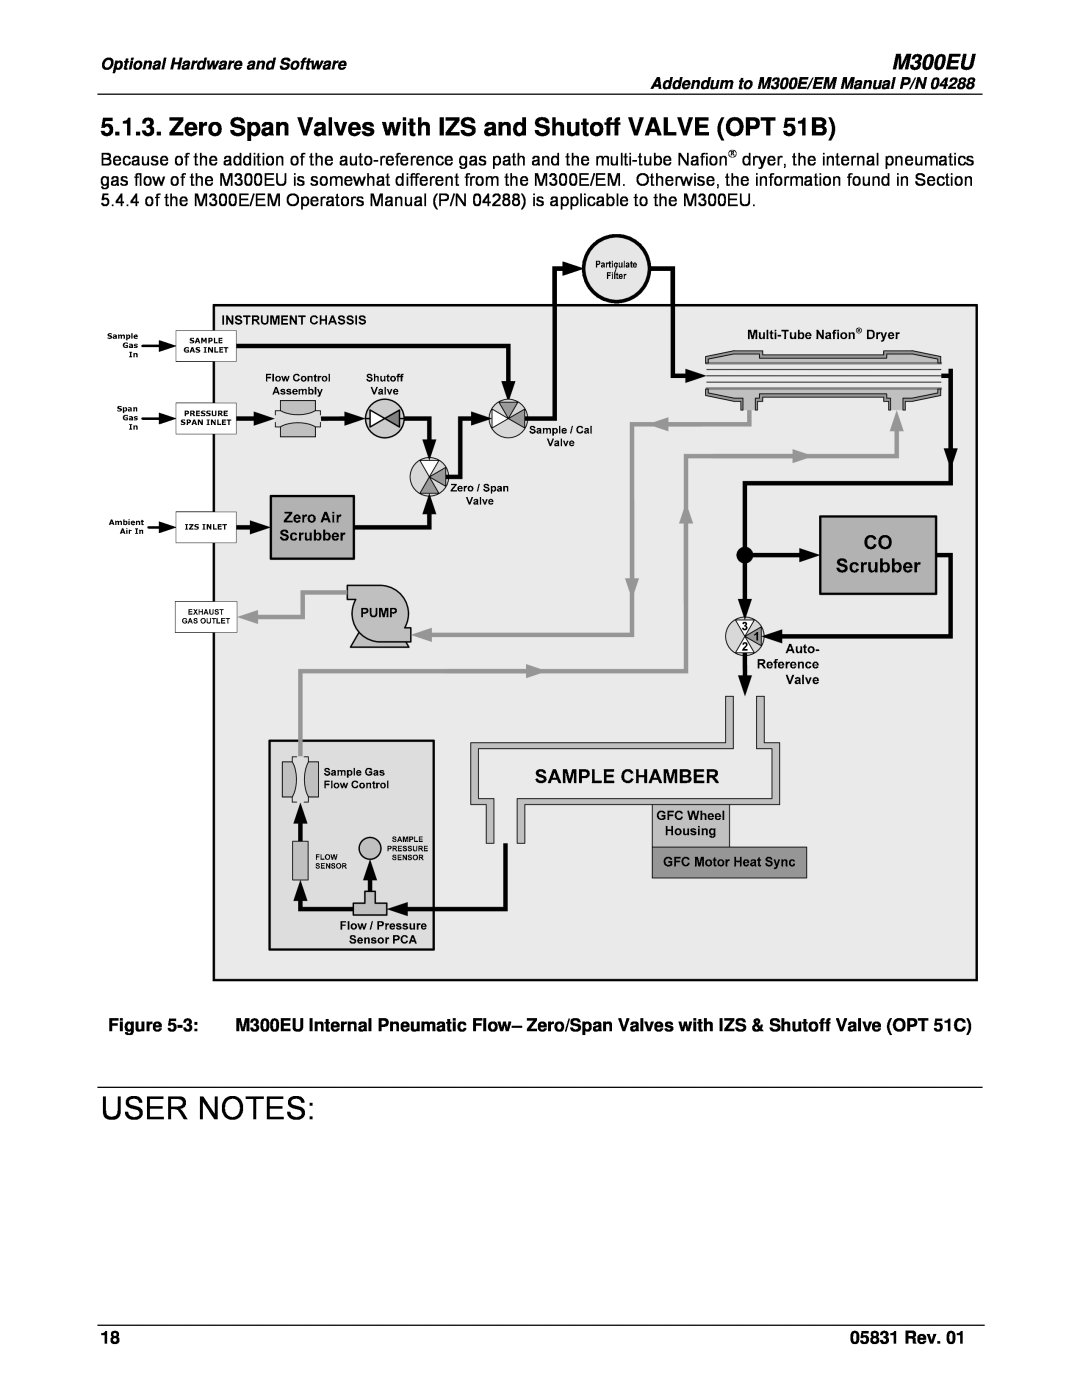 Teledyne Model 300EU manual Zero Span Valves with IZS and Shutoff VALVE OPT 51B, User Notes, M300EU, 05831 Rev 